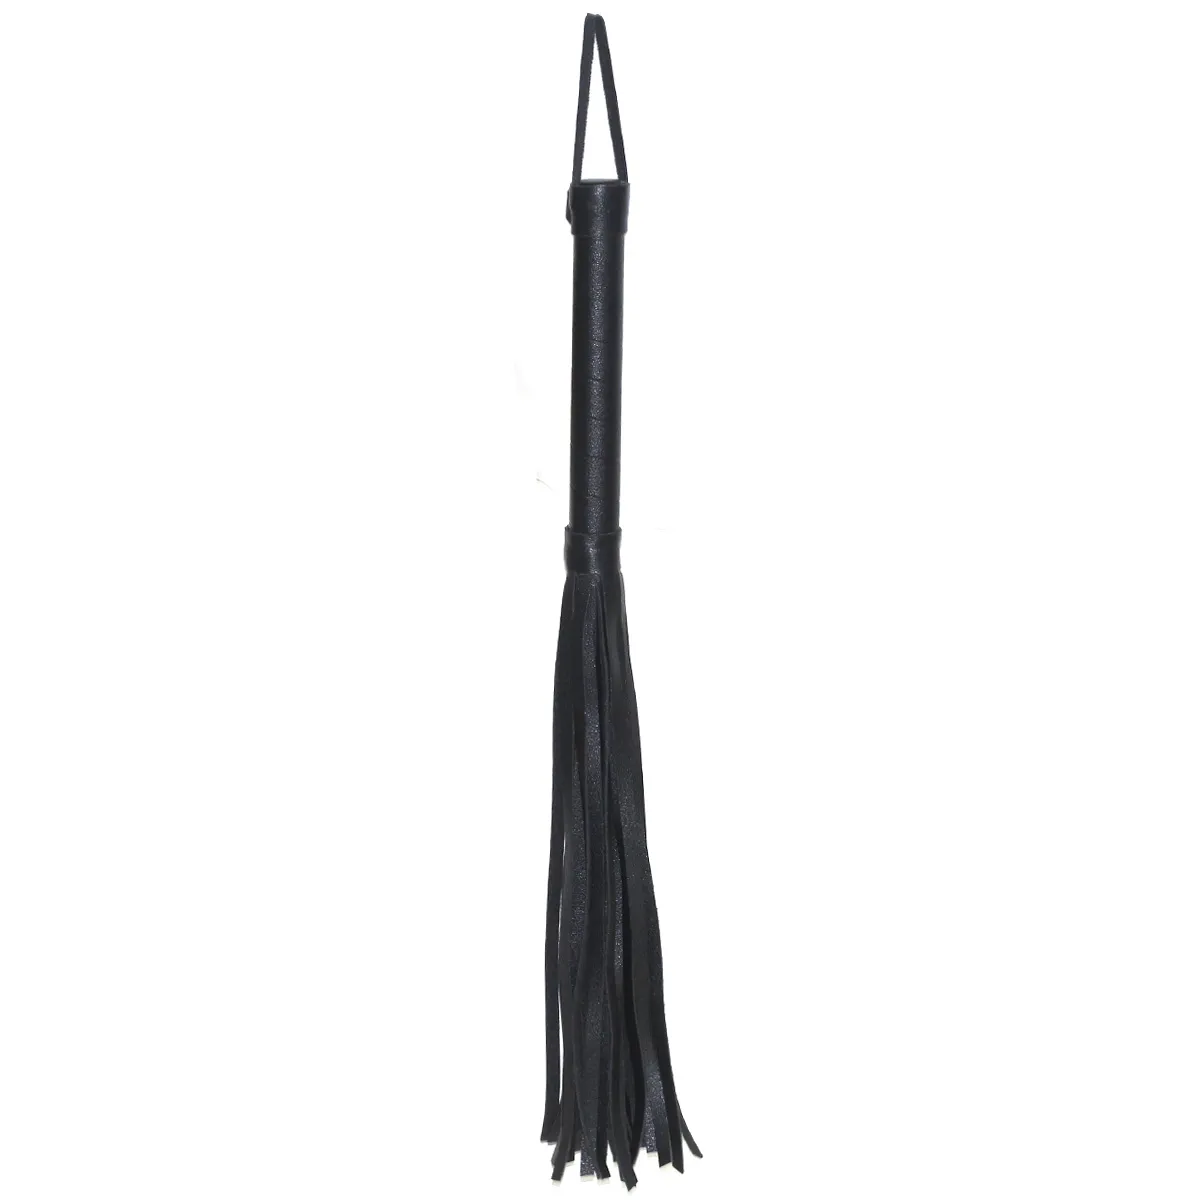 Kit de Bondage en cuir noir, avec poignets sexuels, bouche Gag, fétiche, esclave, fouet de retenue, bandeau, corde, collier de cou